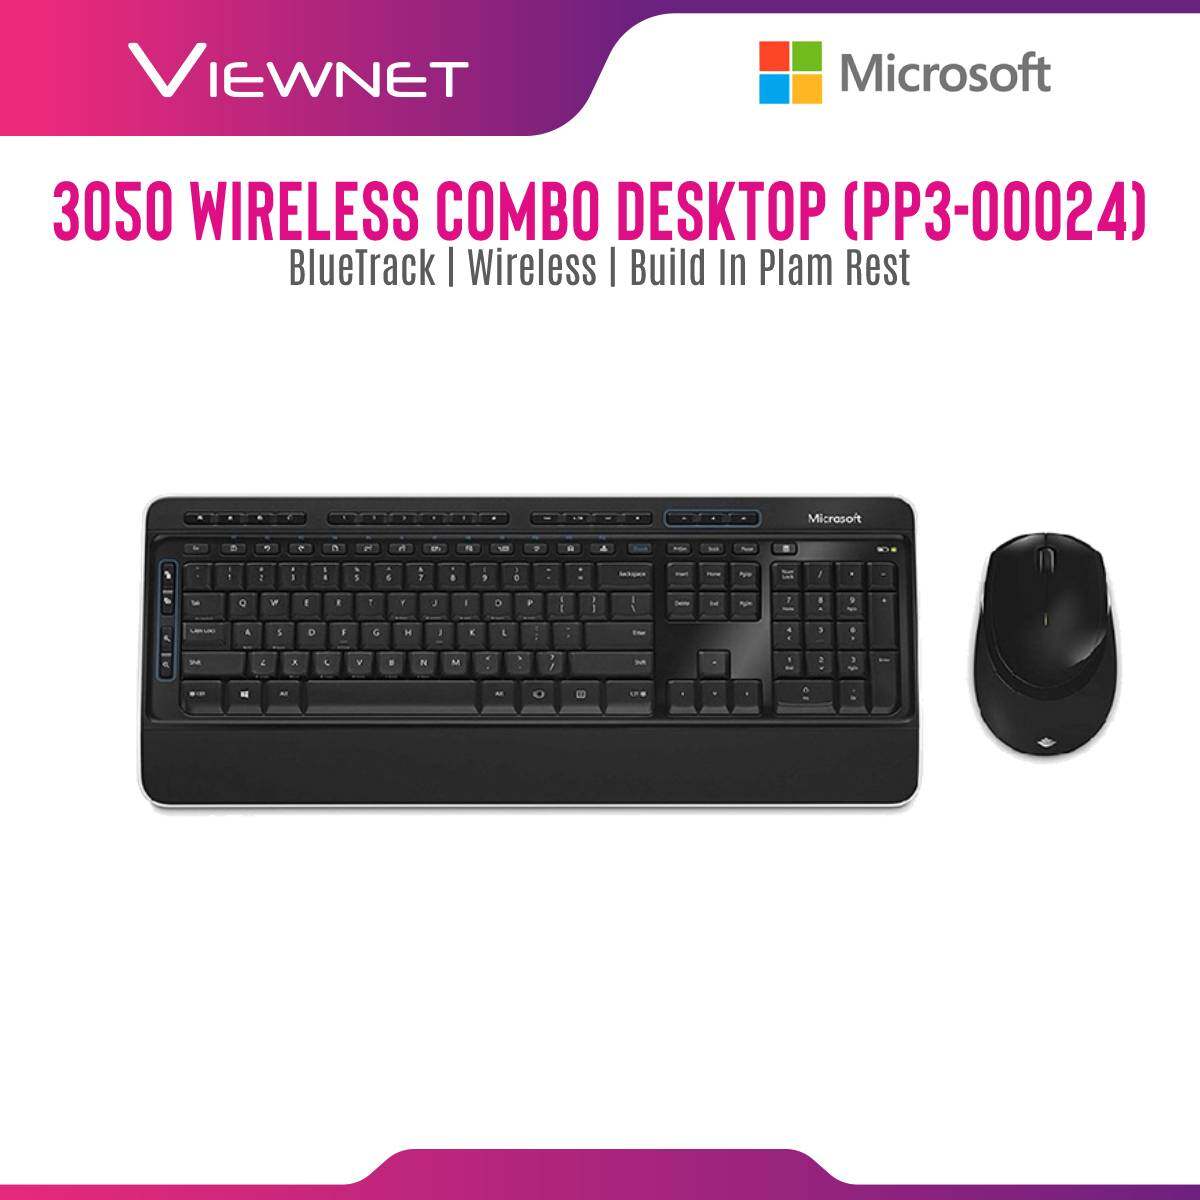 Microsoft Wireless 3050 Desktop Keyboard Mouse Combo (PP3-00024)